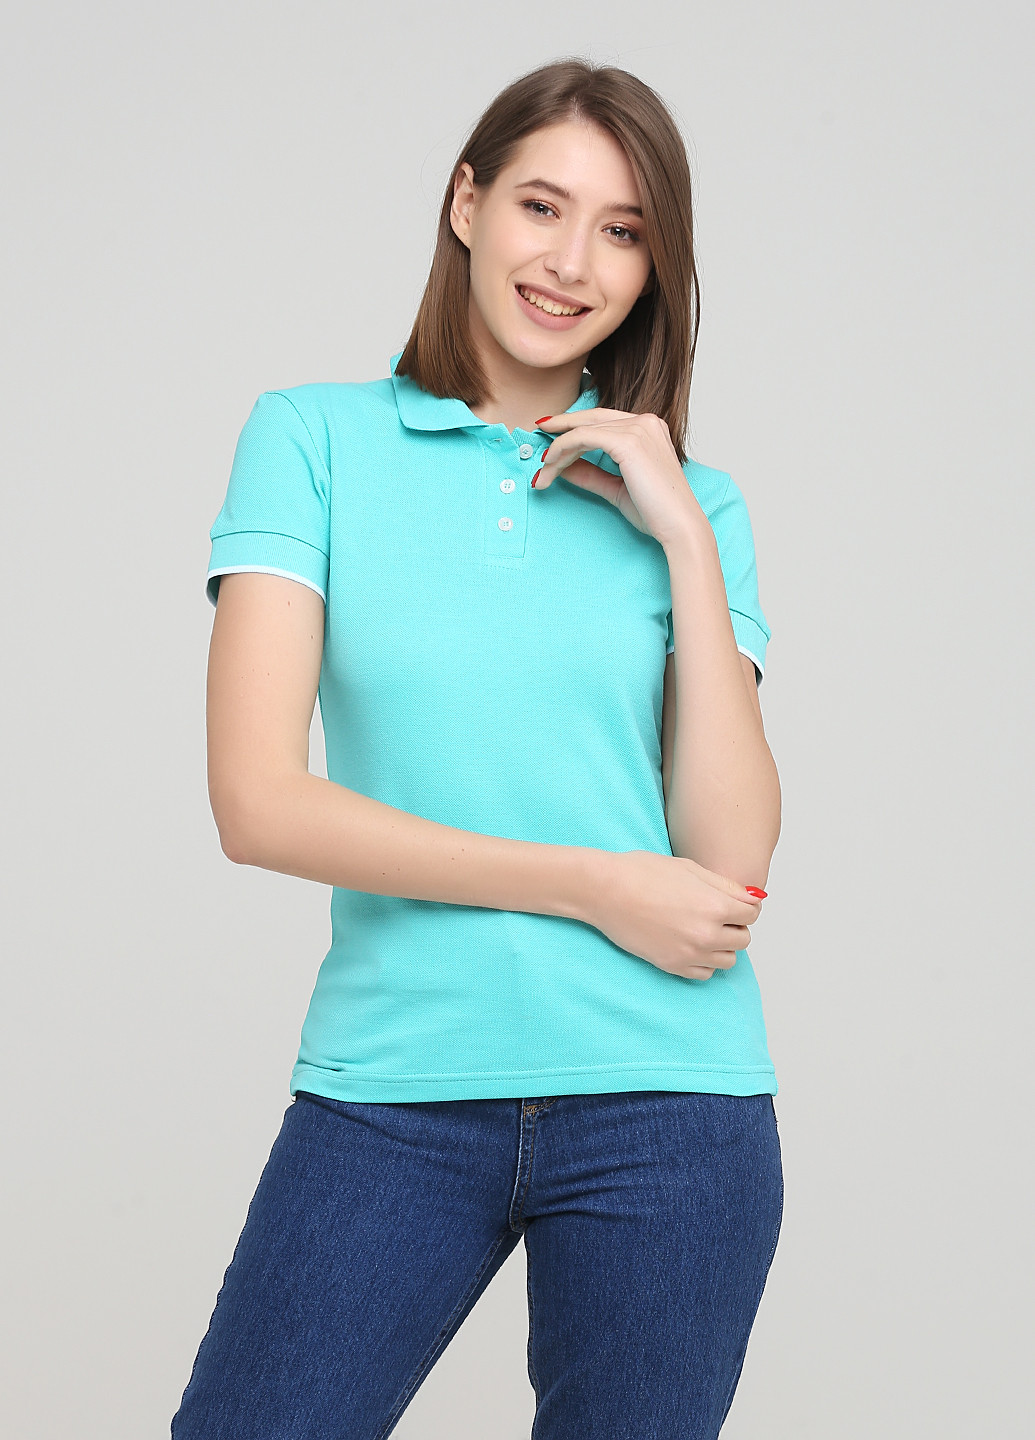 Мятная женская футболка-футболка поло женская классическая цвет мятно-лазурный Melgo однотонная